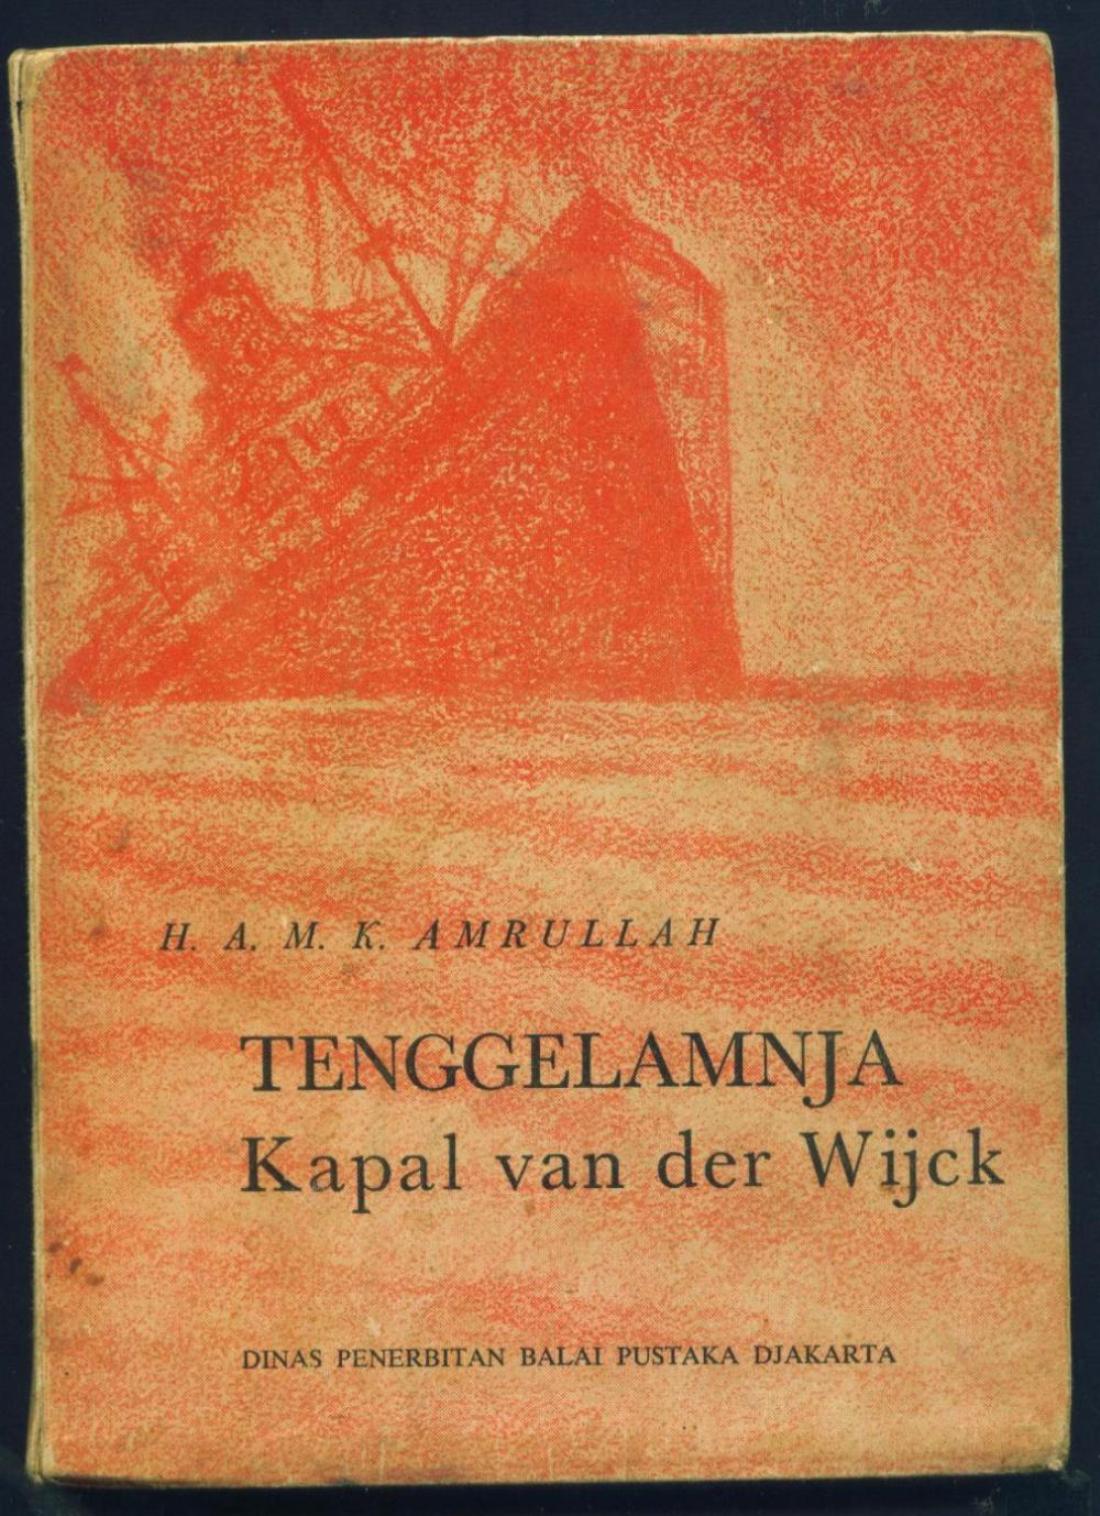 Novel Buya Hamka Tenggelamnya Kapal Van Der Wijck Pdf 